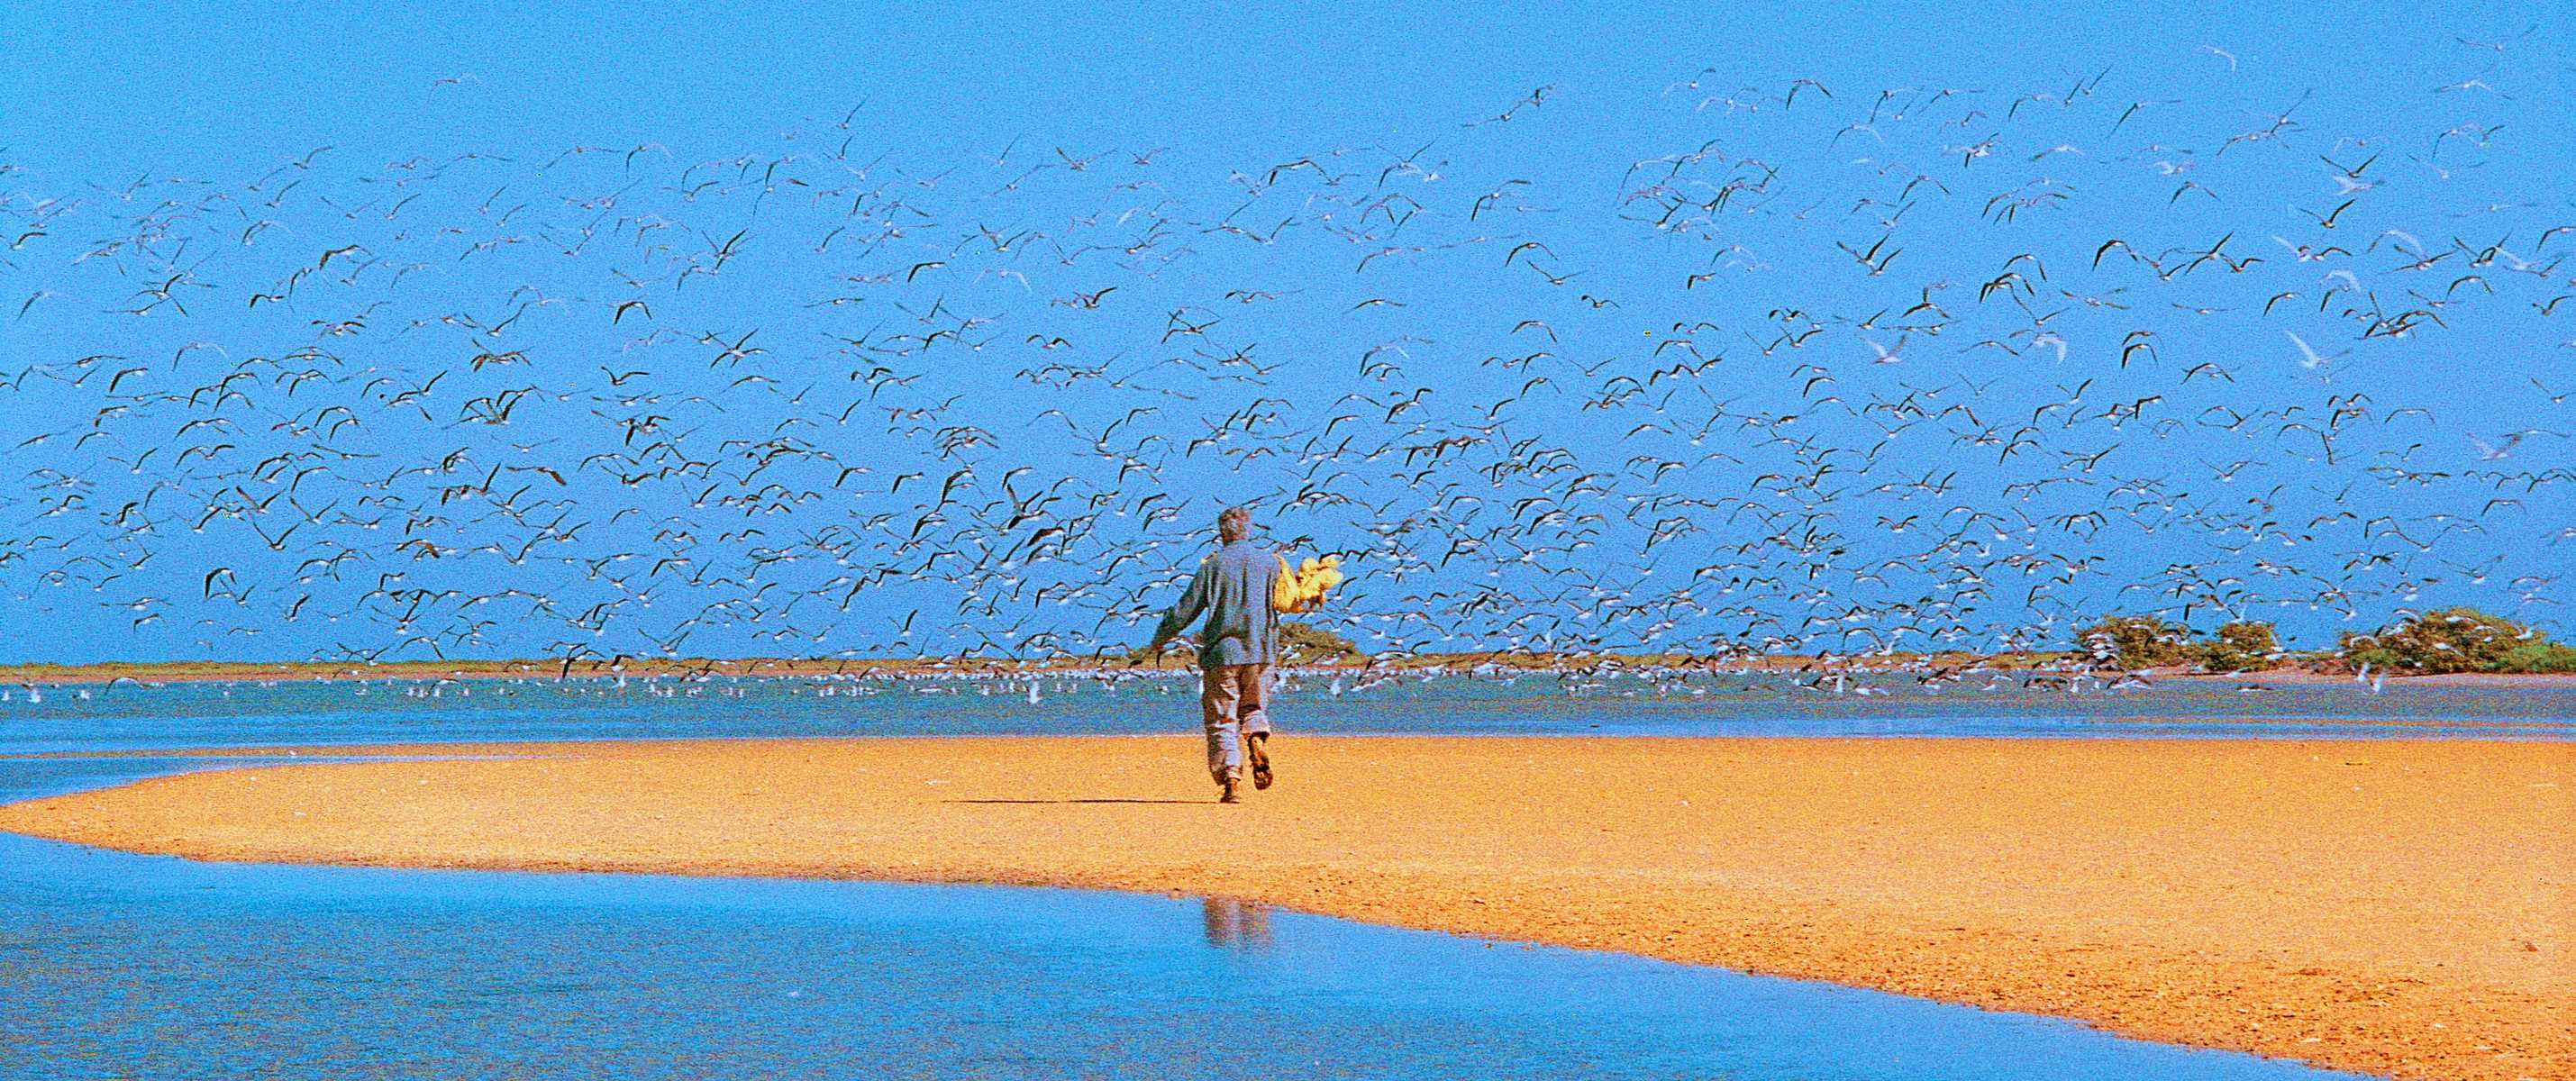 Le Banc d'Arguin et ses milliers d'oiseaux, Mauritanie